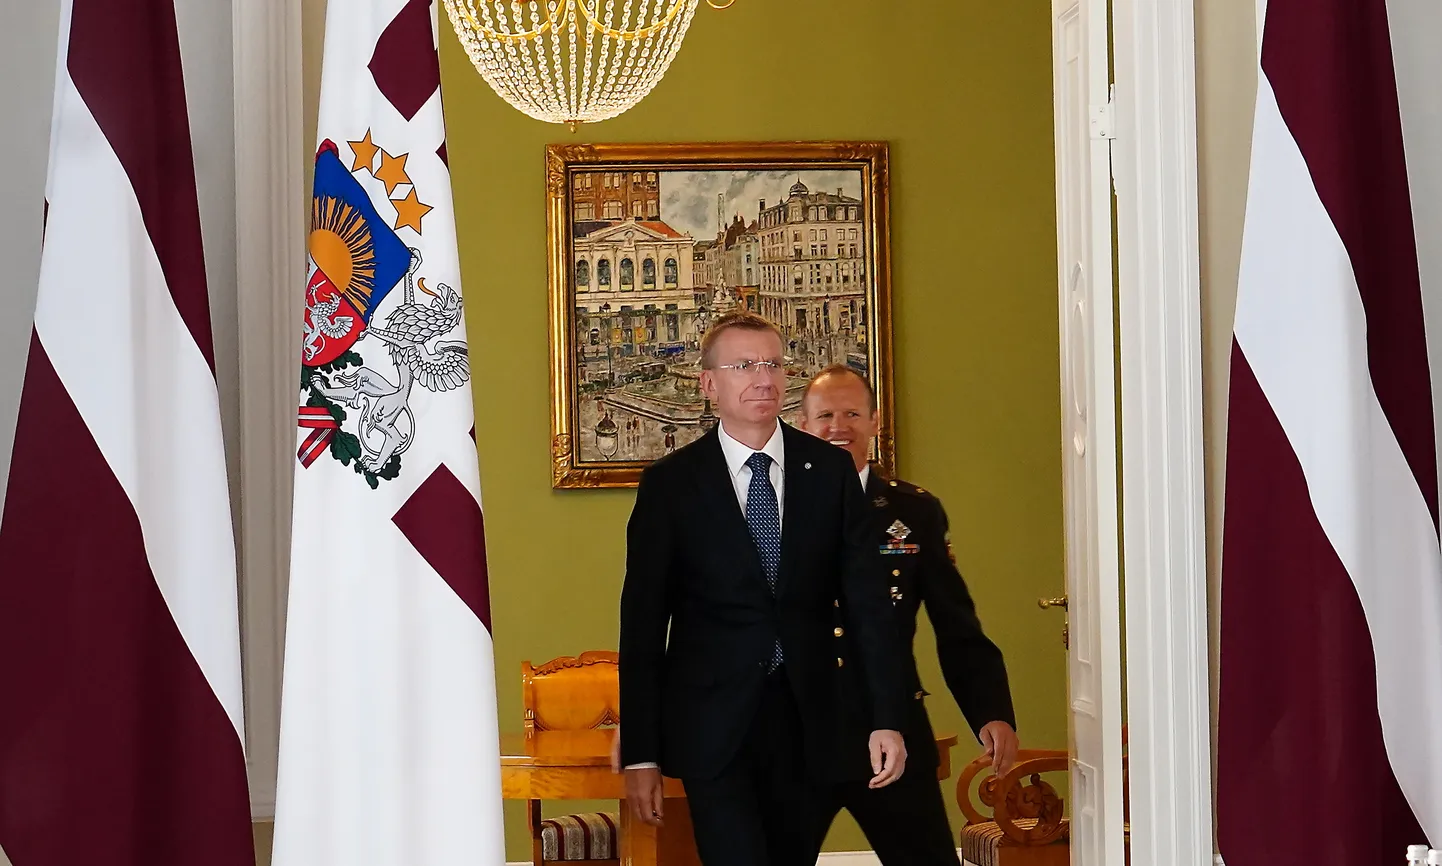 Valsts prezidents Edgars Rinkēvičs tiekas ar Saeimā pārstāvētajiem politiskajiem spēkiem, meklējot iespējas izveidot plašāku jauno koalīciju pēc Krišjāņa Kariņa valdības krišanas.